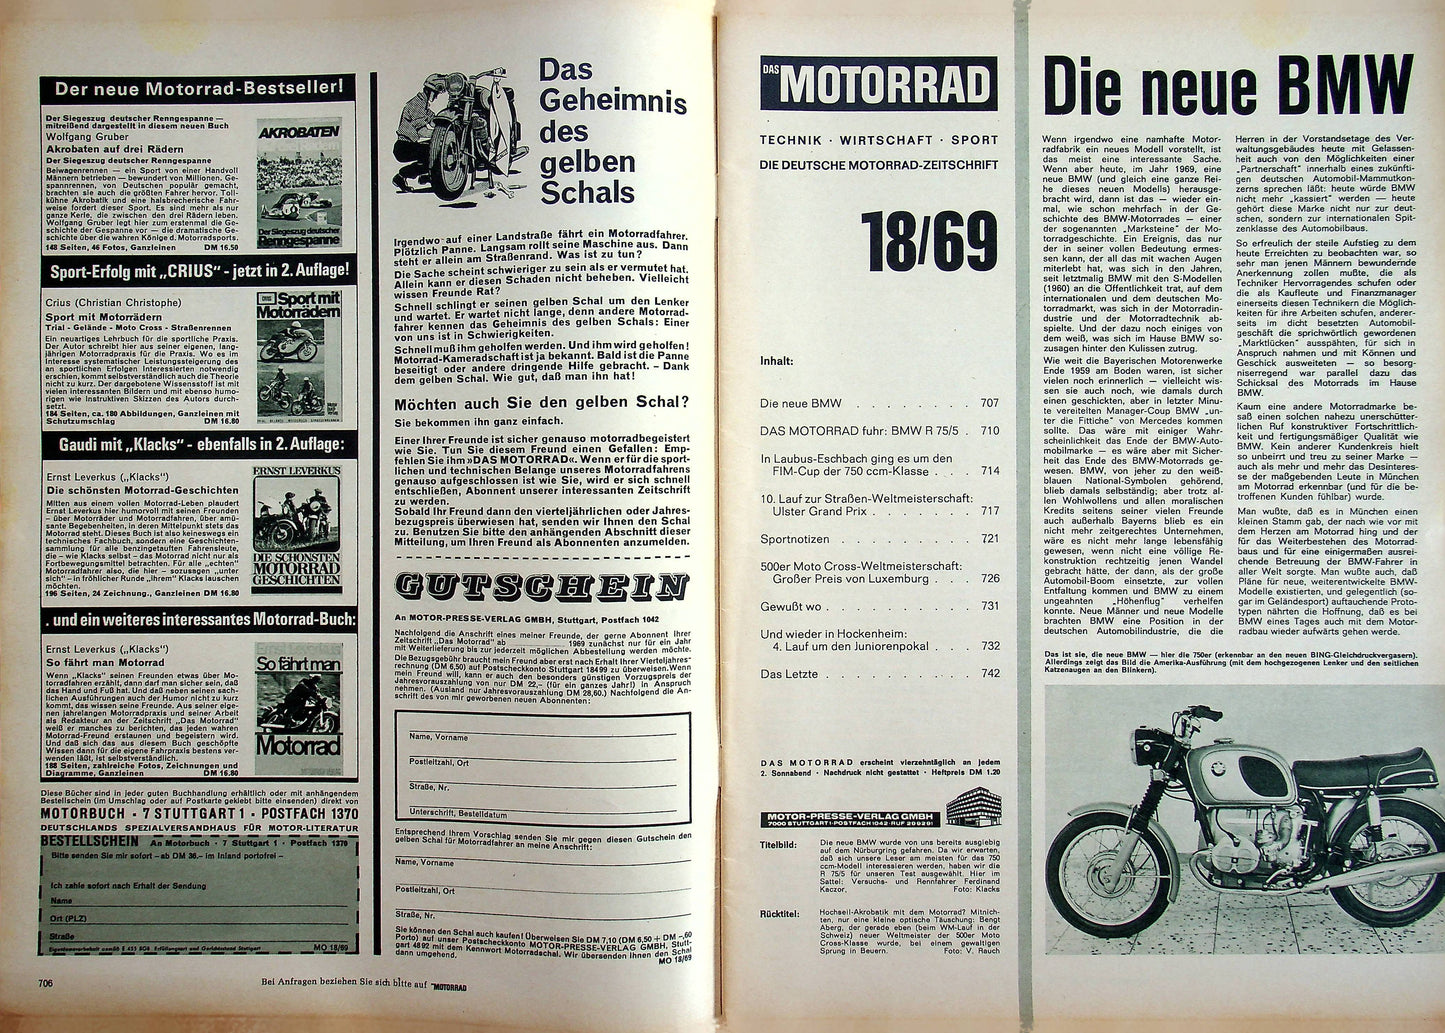 Motorrad 18/1969